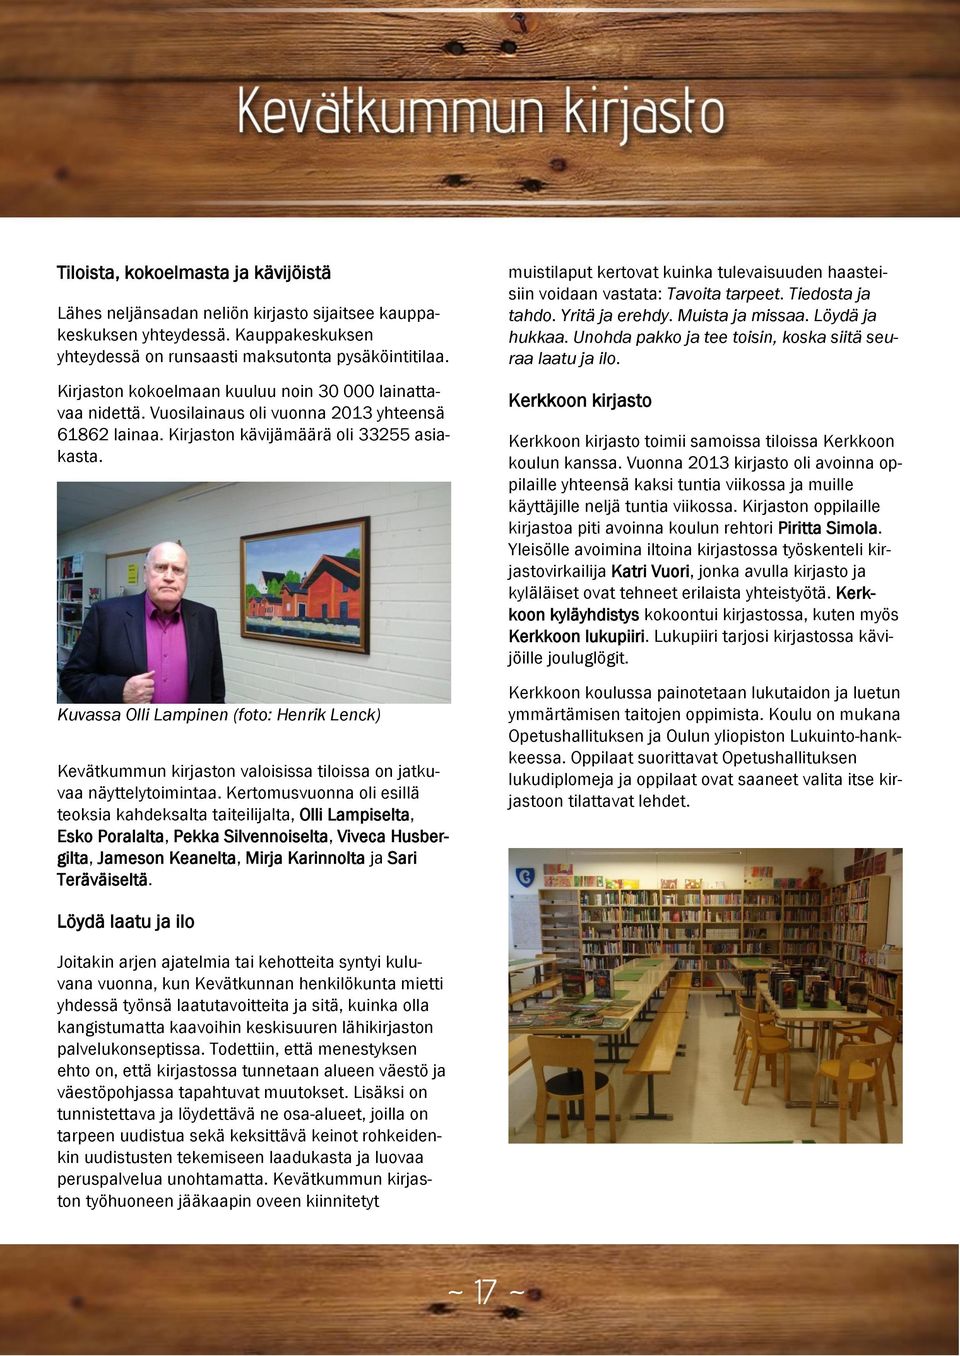 Kuvassa Olli Lampinen (foto: Henrik Lenck) Kevätkummun kirjaston valoisissa tiloissa on jatkuvaa näyttelytoimintaa.